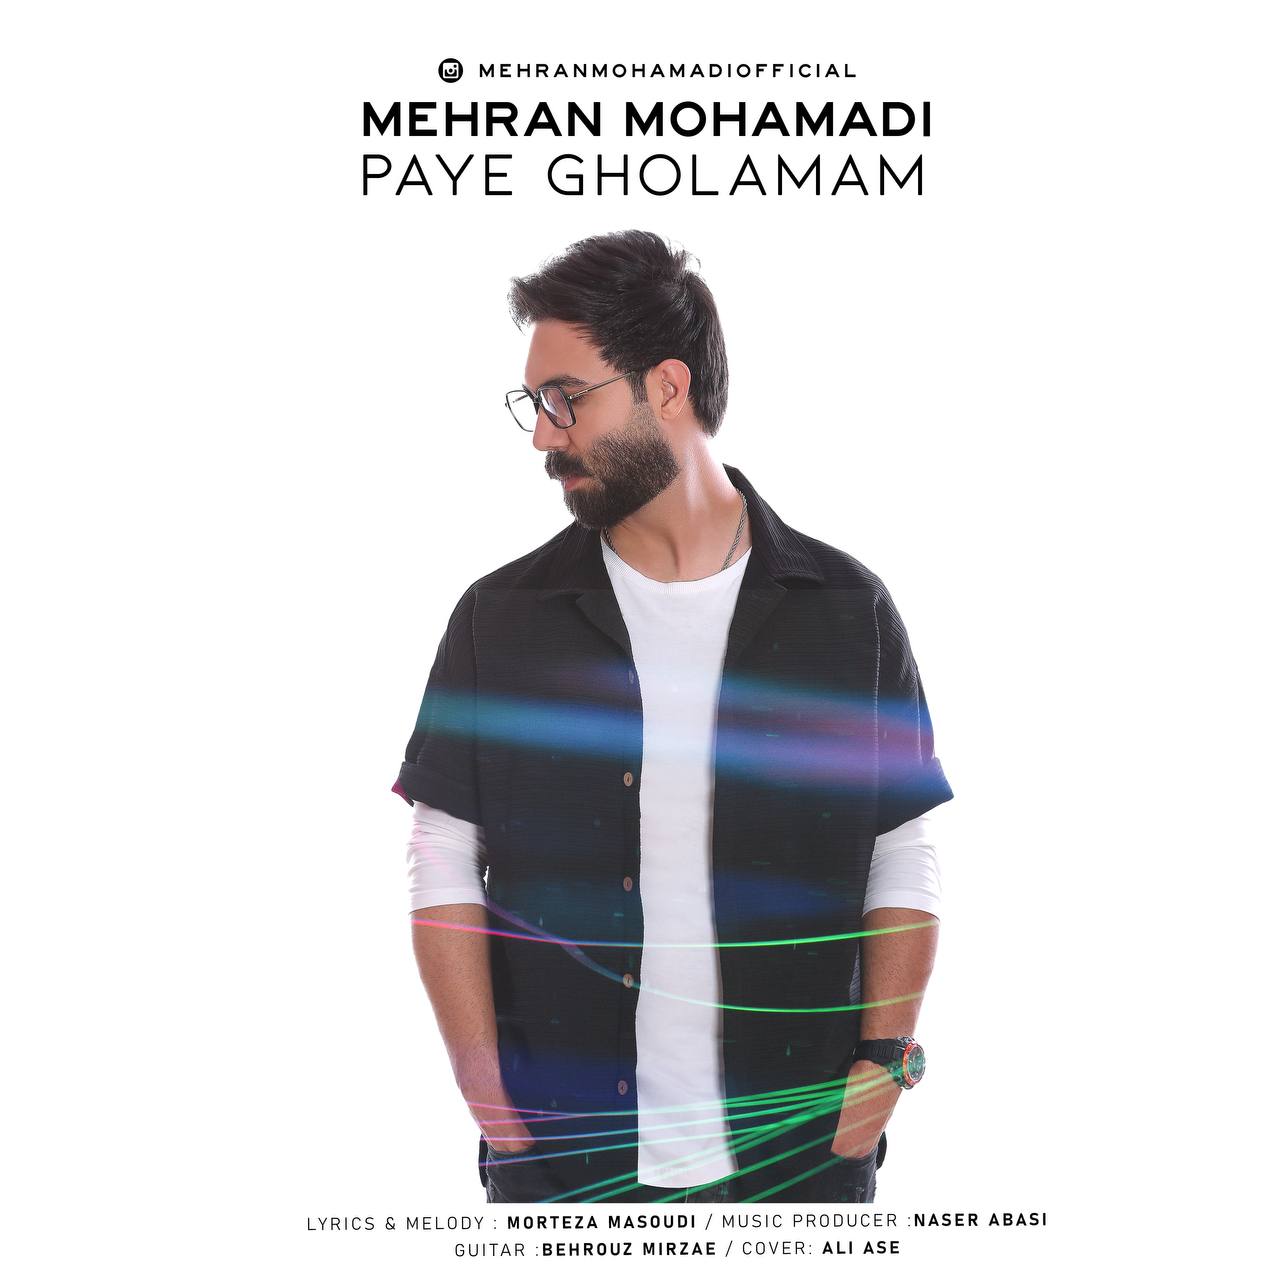 دانلود آهنگ جدید مهران محمدی با عنوان پای قولمم